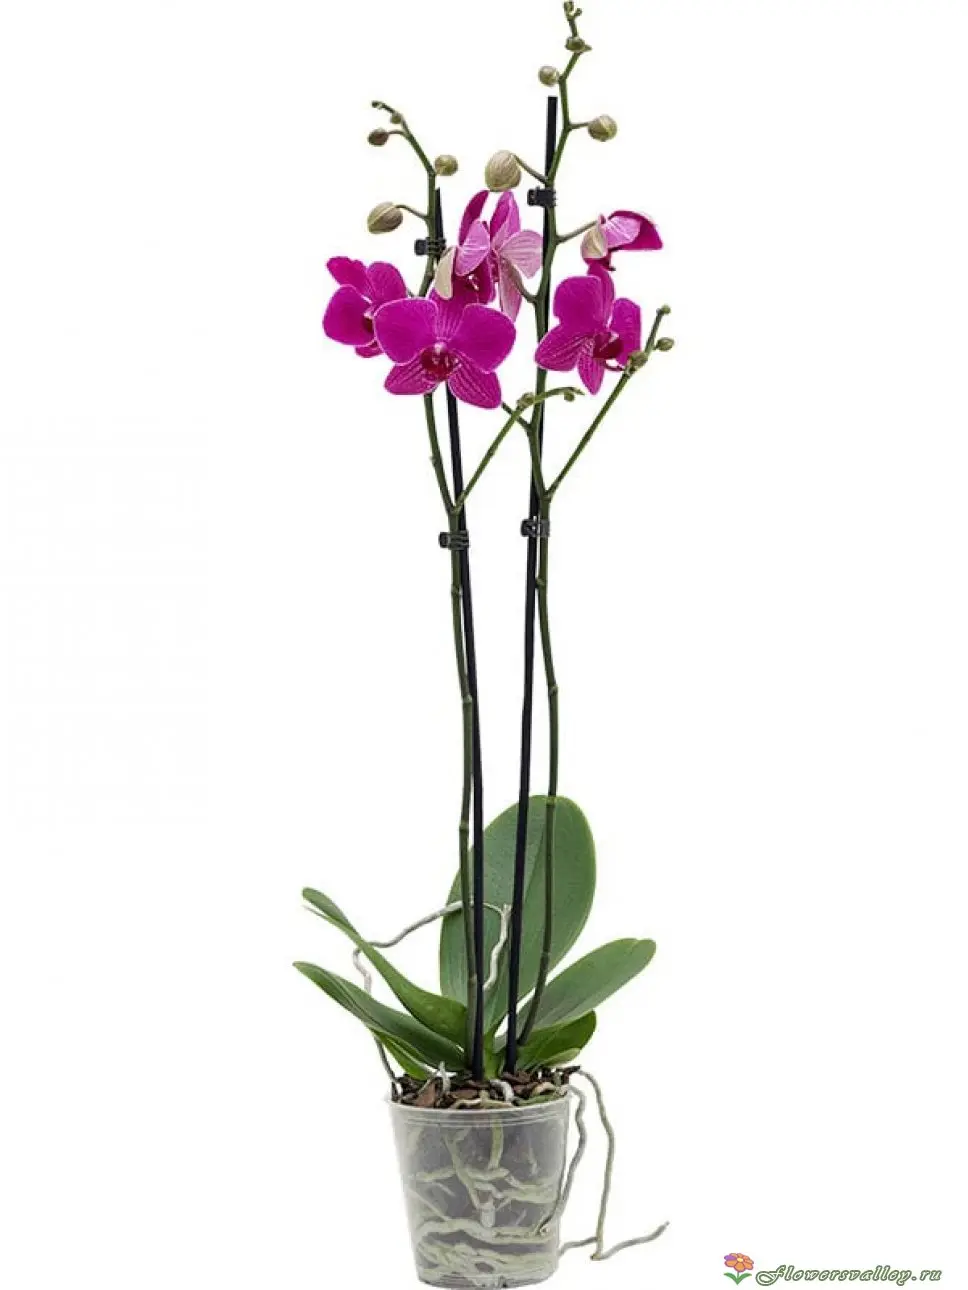 Чудеса растительного мира: орхидеи на фото